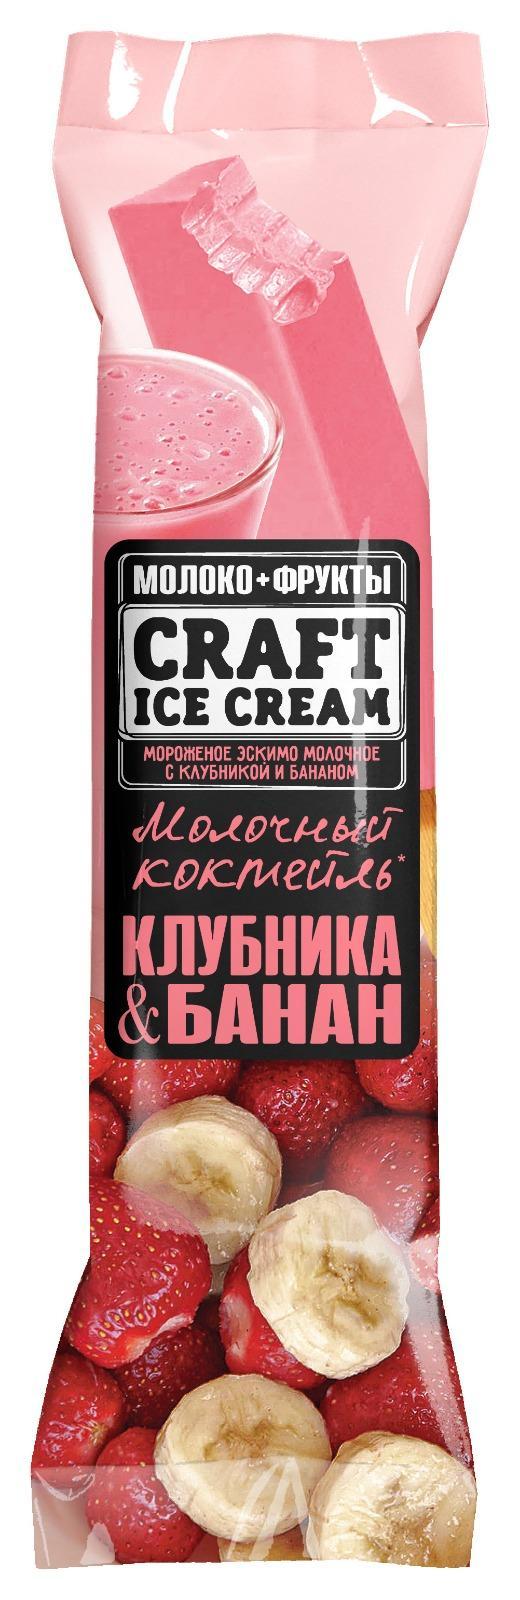 Мороженое эскимо Craft Ice Cream Молочный коктейль клубника-банан 60 гр., флоу-пак